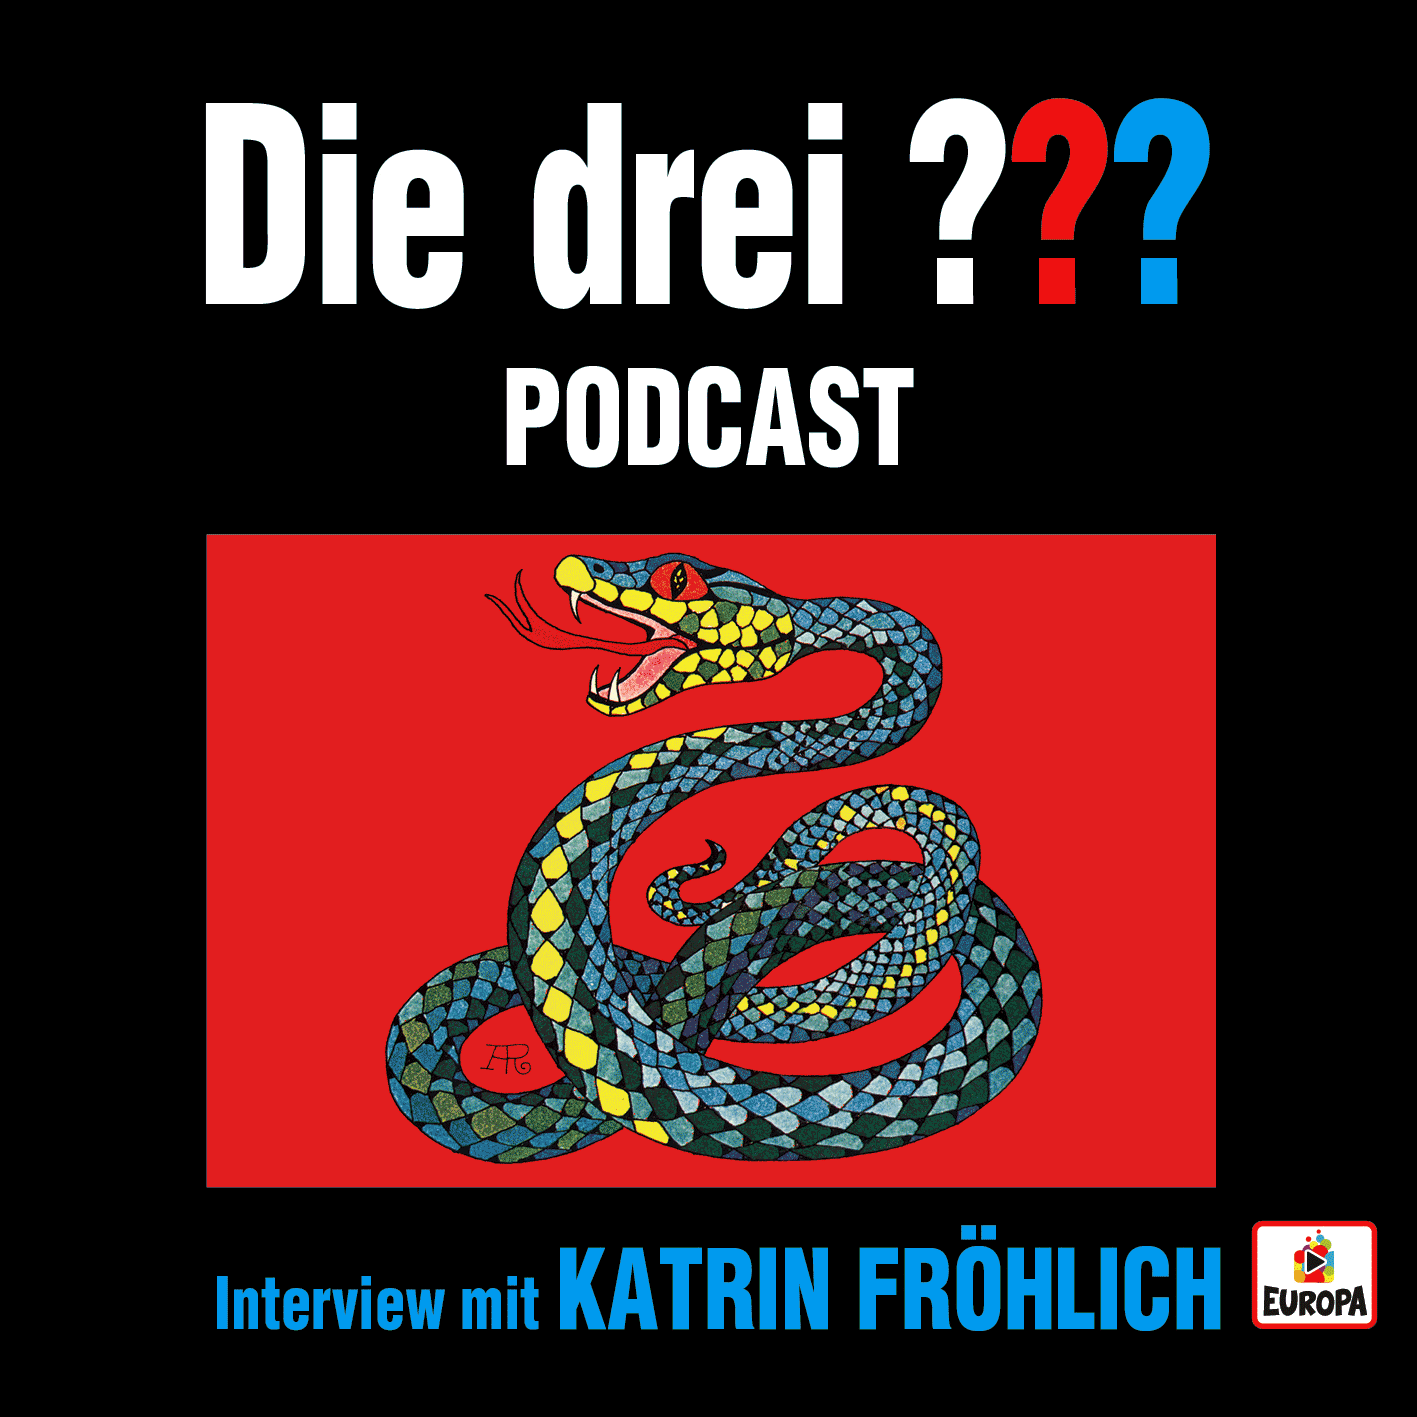 Das Podcast Staffel Finale mit Katrin Fröhlich liest ...und die singende Schlange